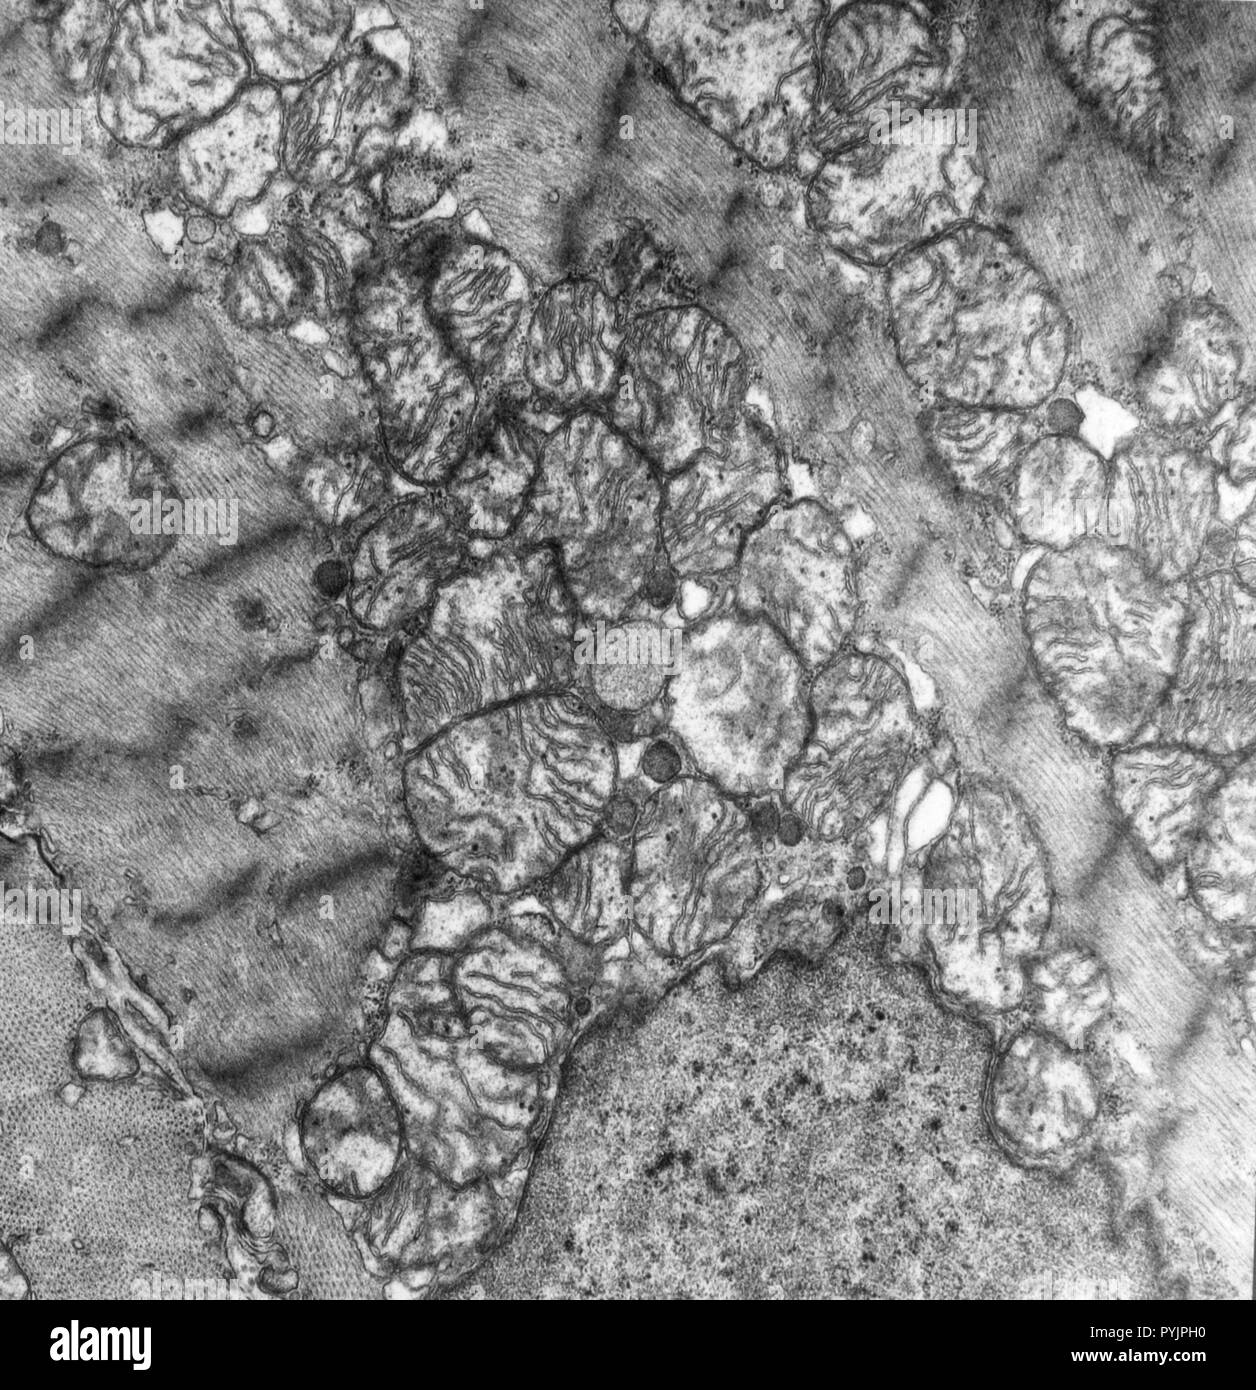 Elektronenmikroskopische Aufnahme eines Querschnitts der Mitochondrien in Herzmuskelgewebe Stockfoto